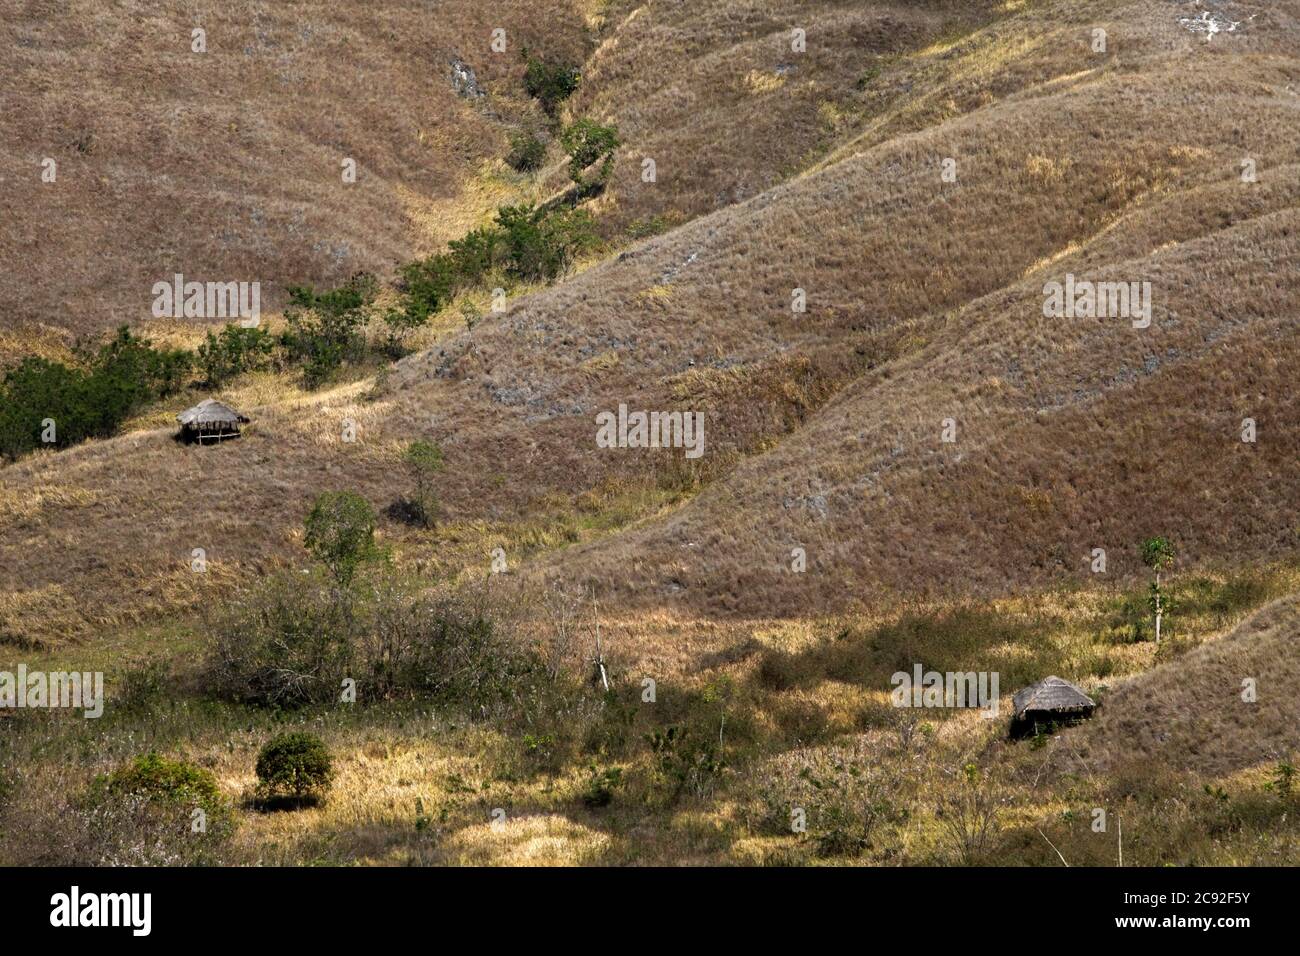 Cabañas de madera en praderas secas en paisaje montañoso durante la estación seca en la colina de Wairinding en Sumba, e isla regularmente azotada por la sequía en Indonesia. Foto de stock